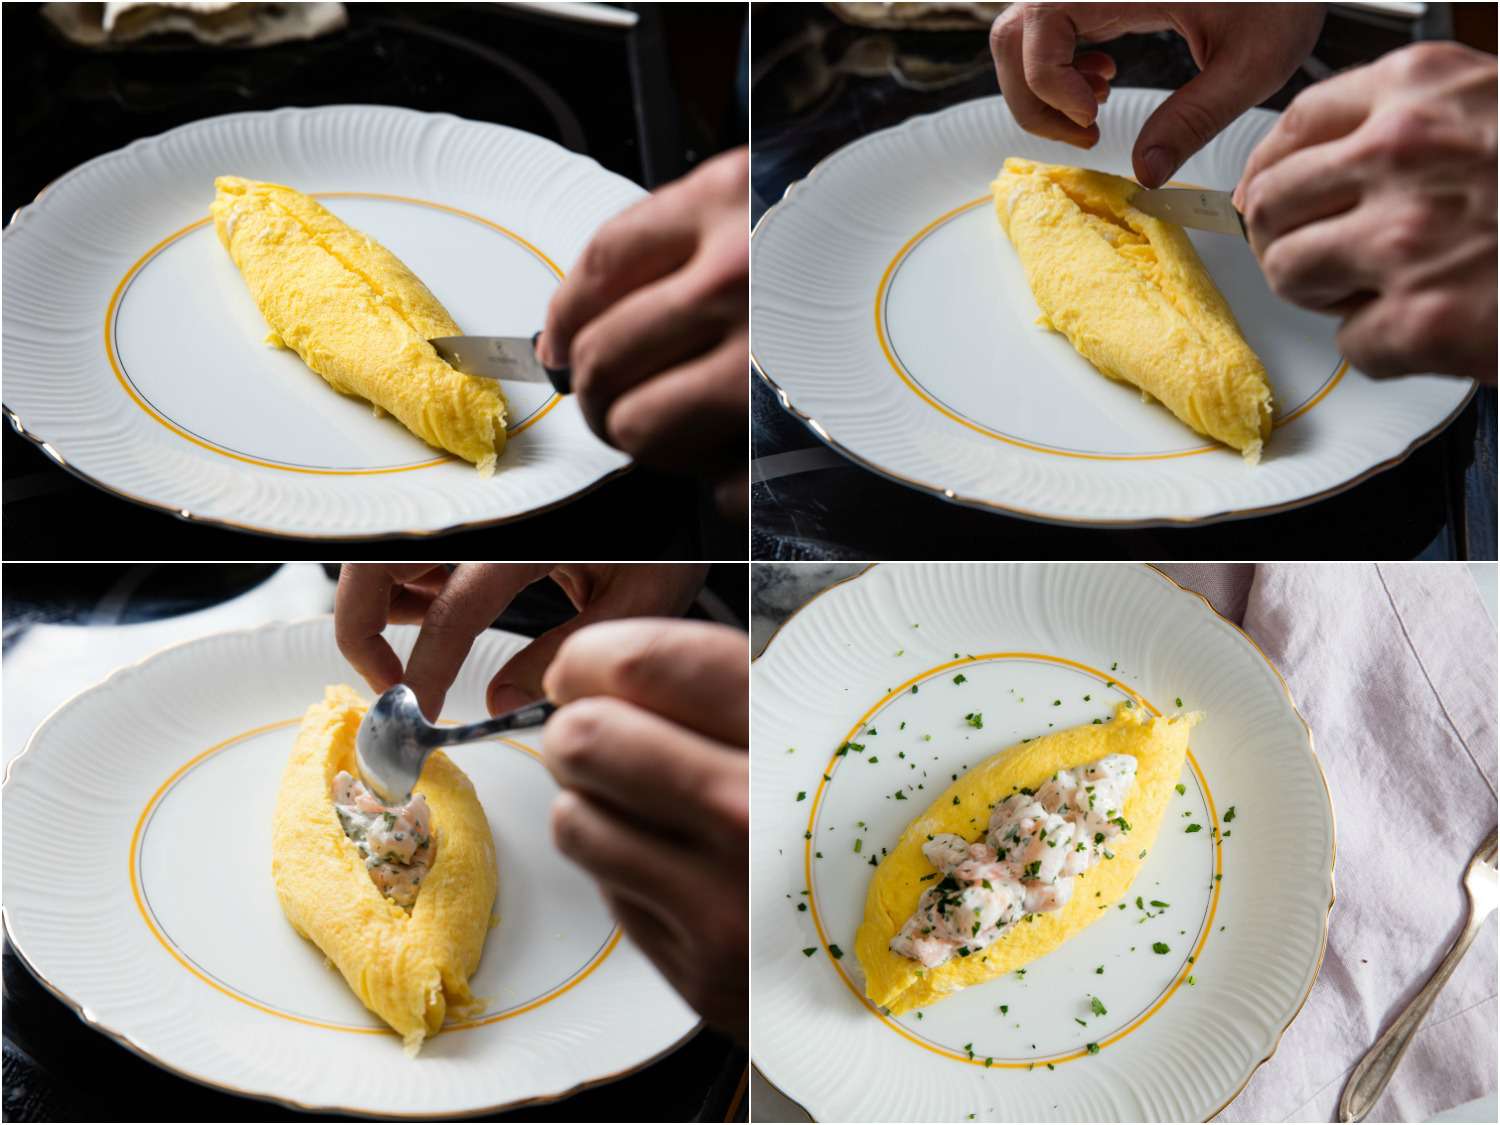 一组塞法式煎蛋卷的拼贴照片:用刀切开煎蛋卷，把开口弄大，舀进虾沙拉，最后填满的煎蛋卷配上切碎的香草gydF4y2Ba